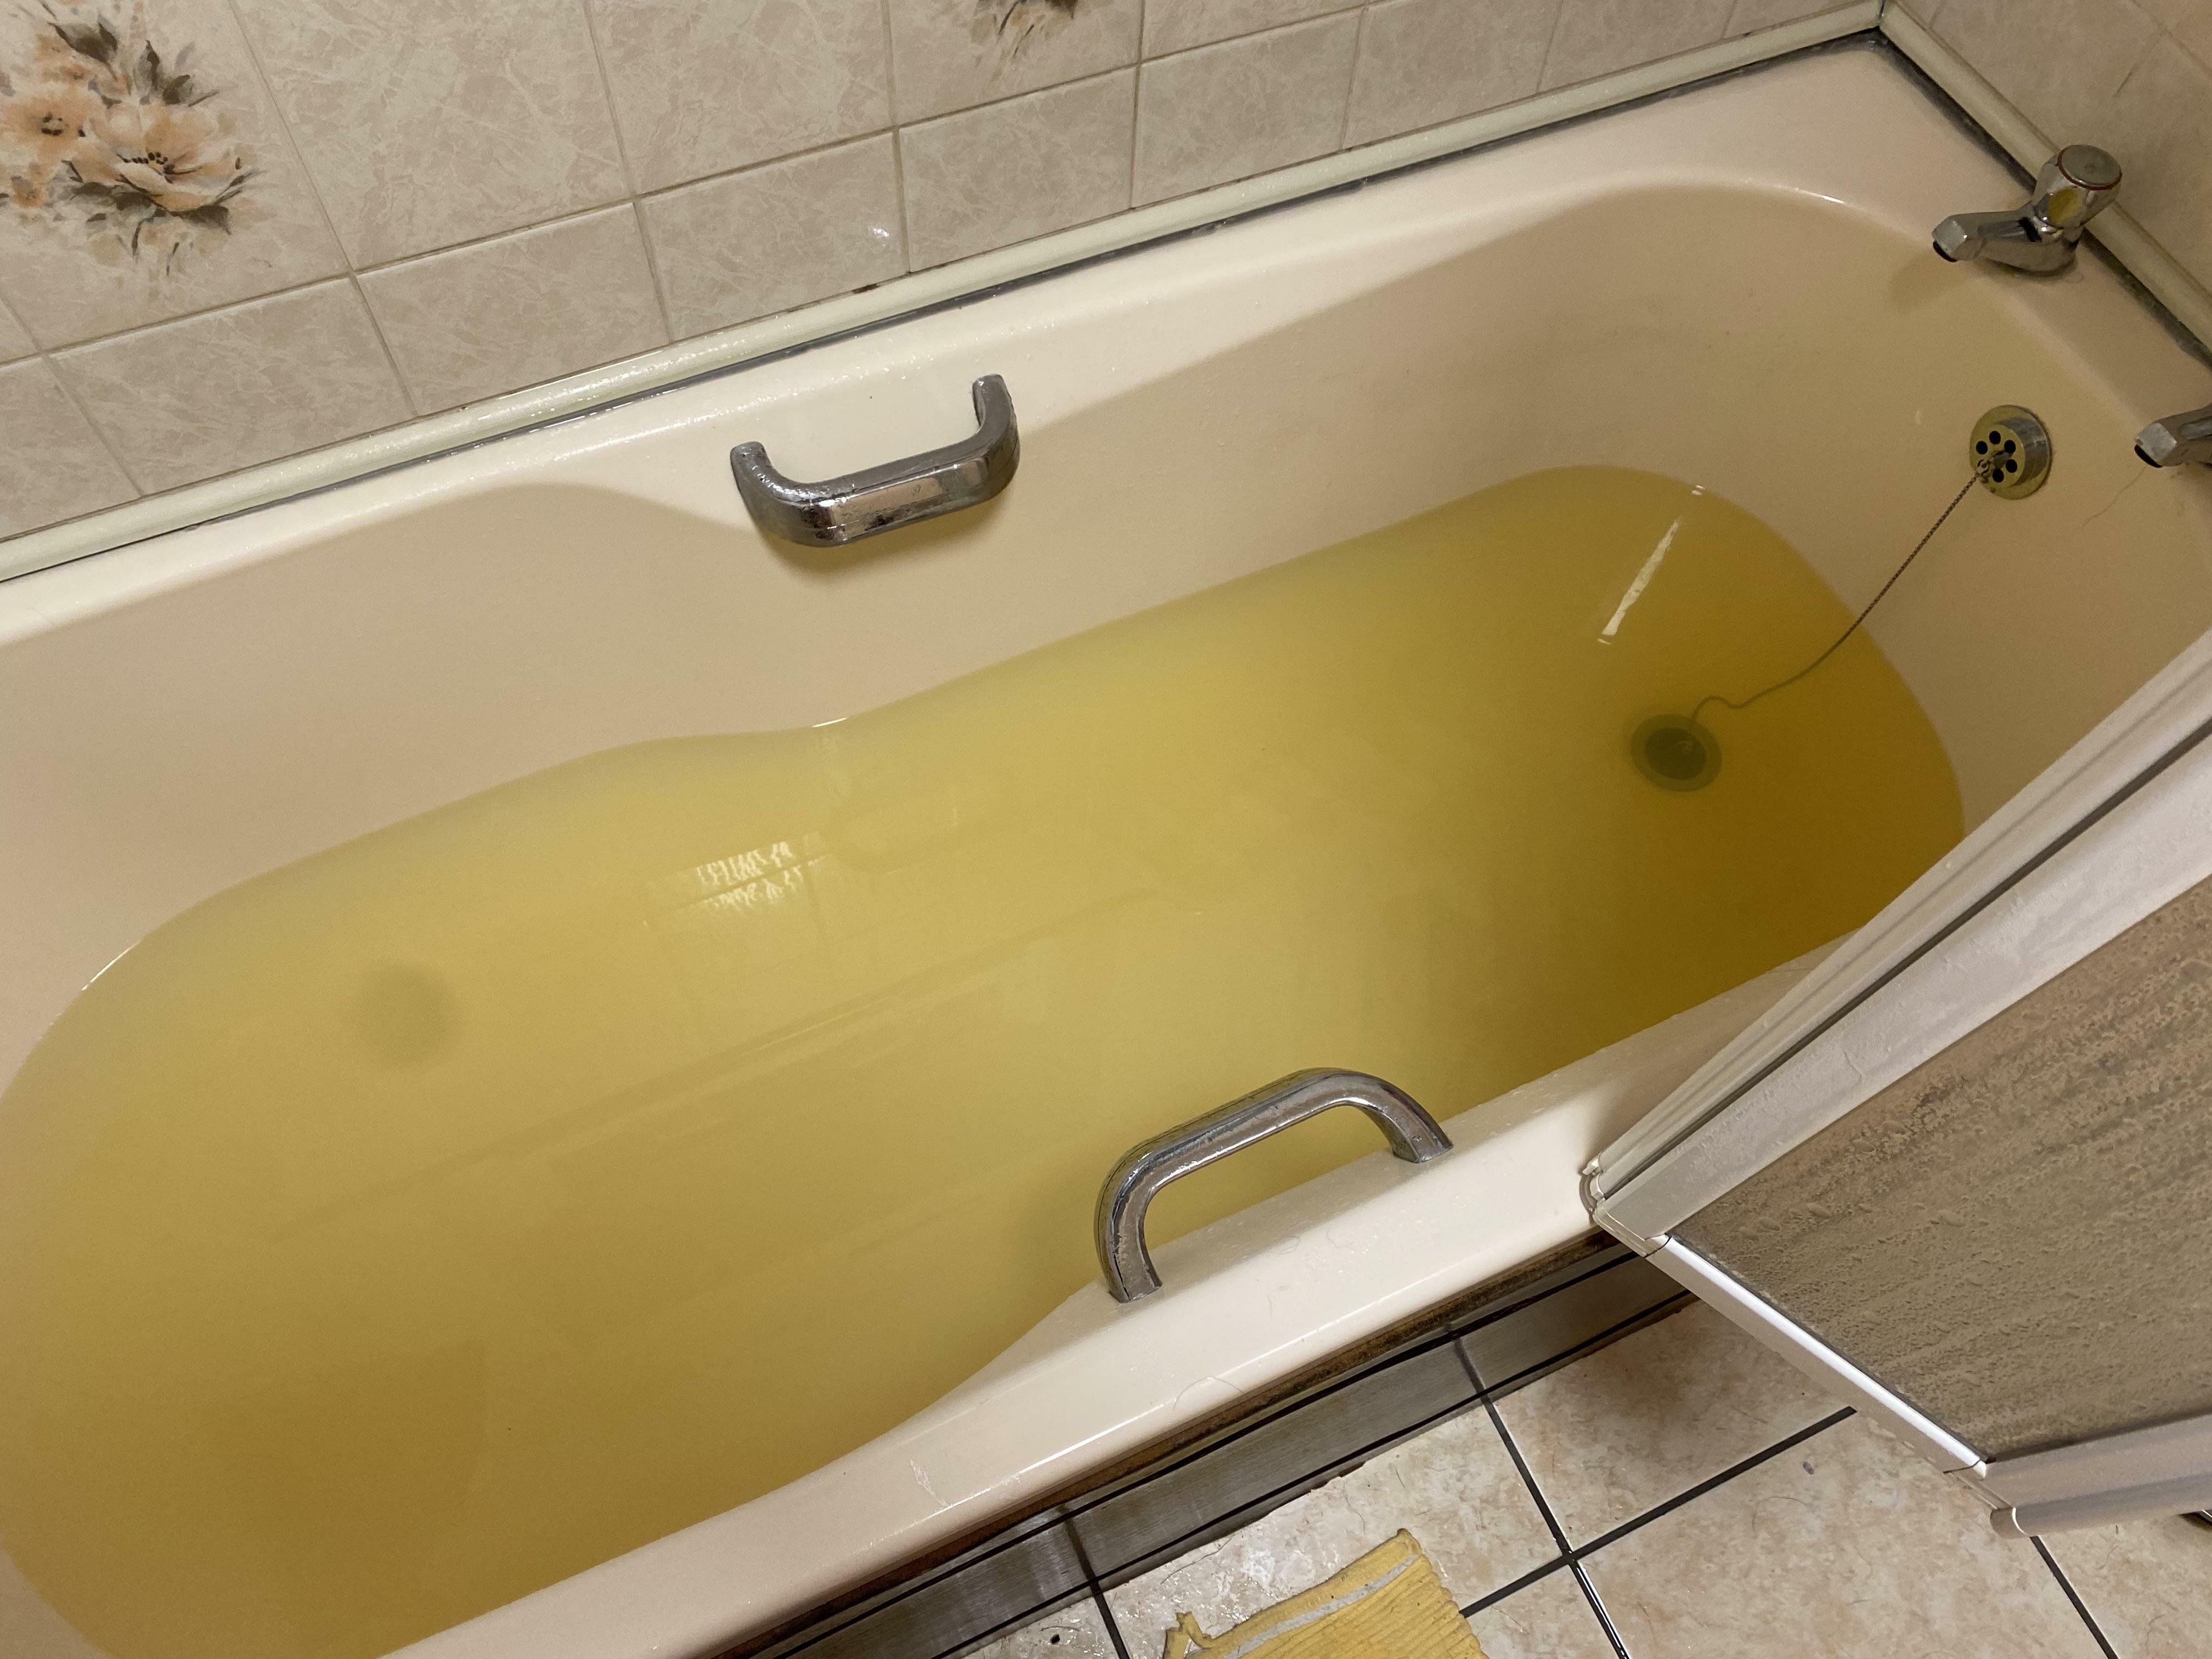 L'eau est jaune pisseux et a un goût métallique dans notre Airbnb depuis une semaine. Le propriétaire dit qu'il ne peut rien y faire.